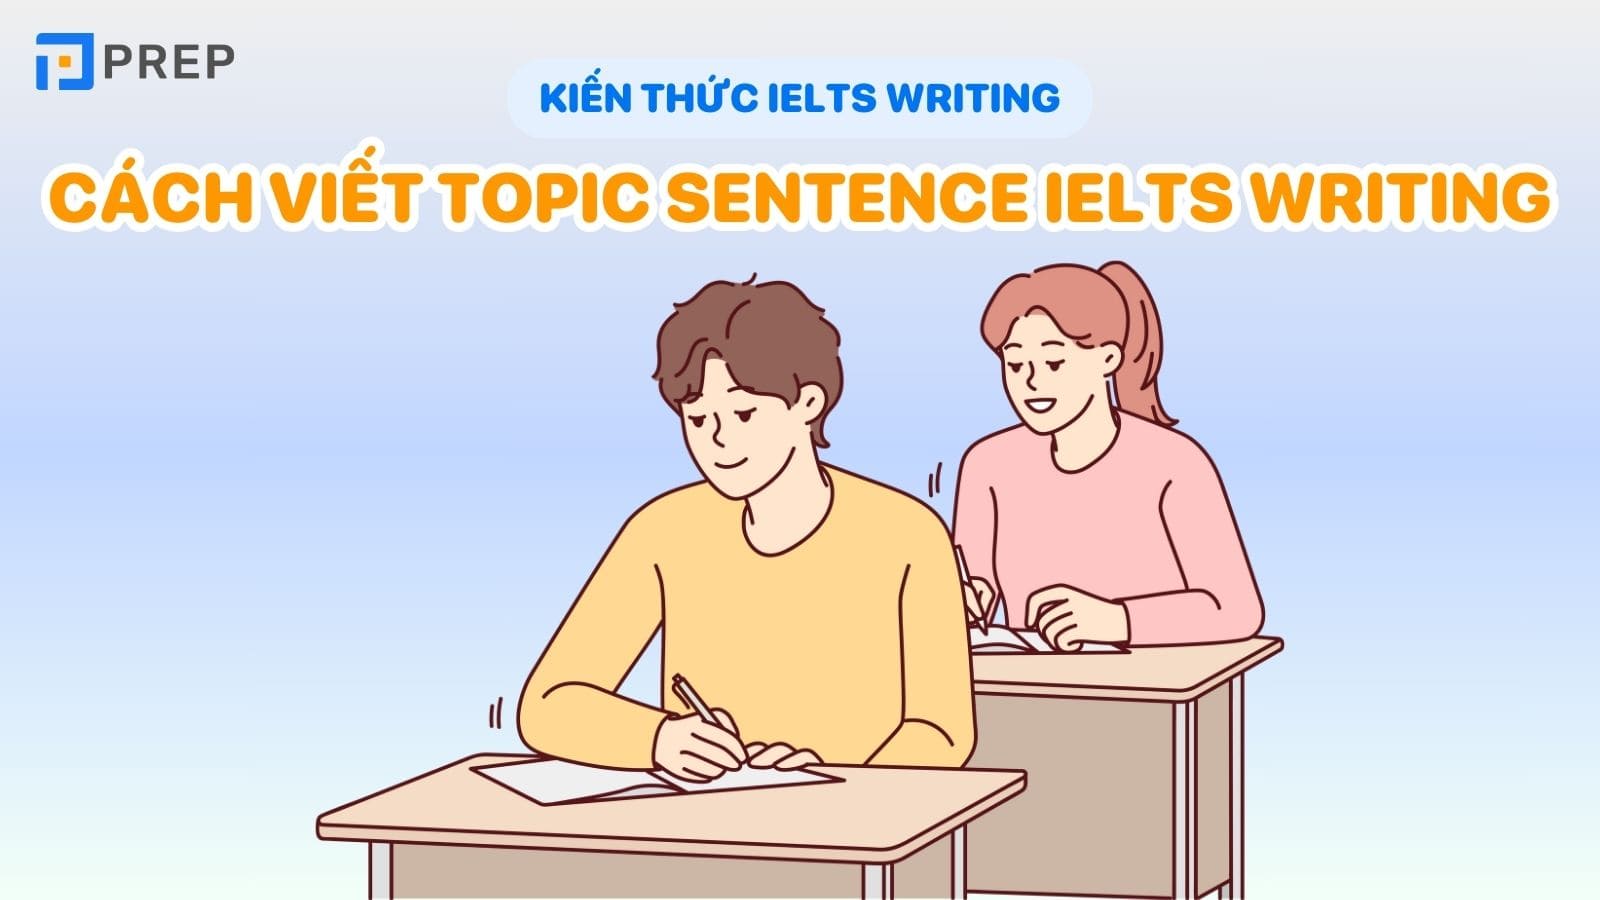 cach-viet-topic-sentence-ielts-writing.jpg